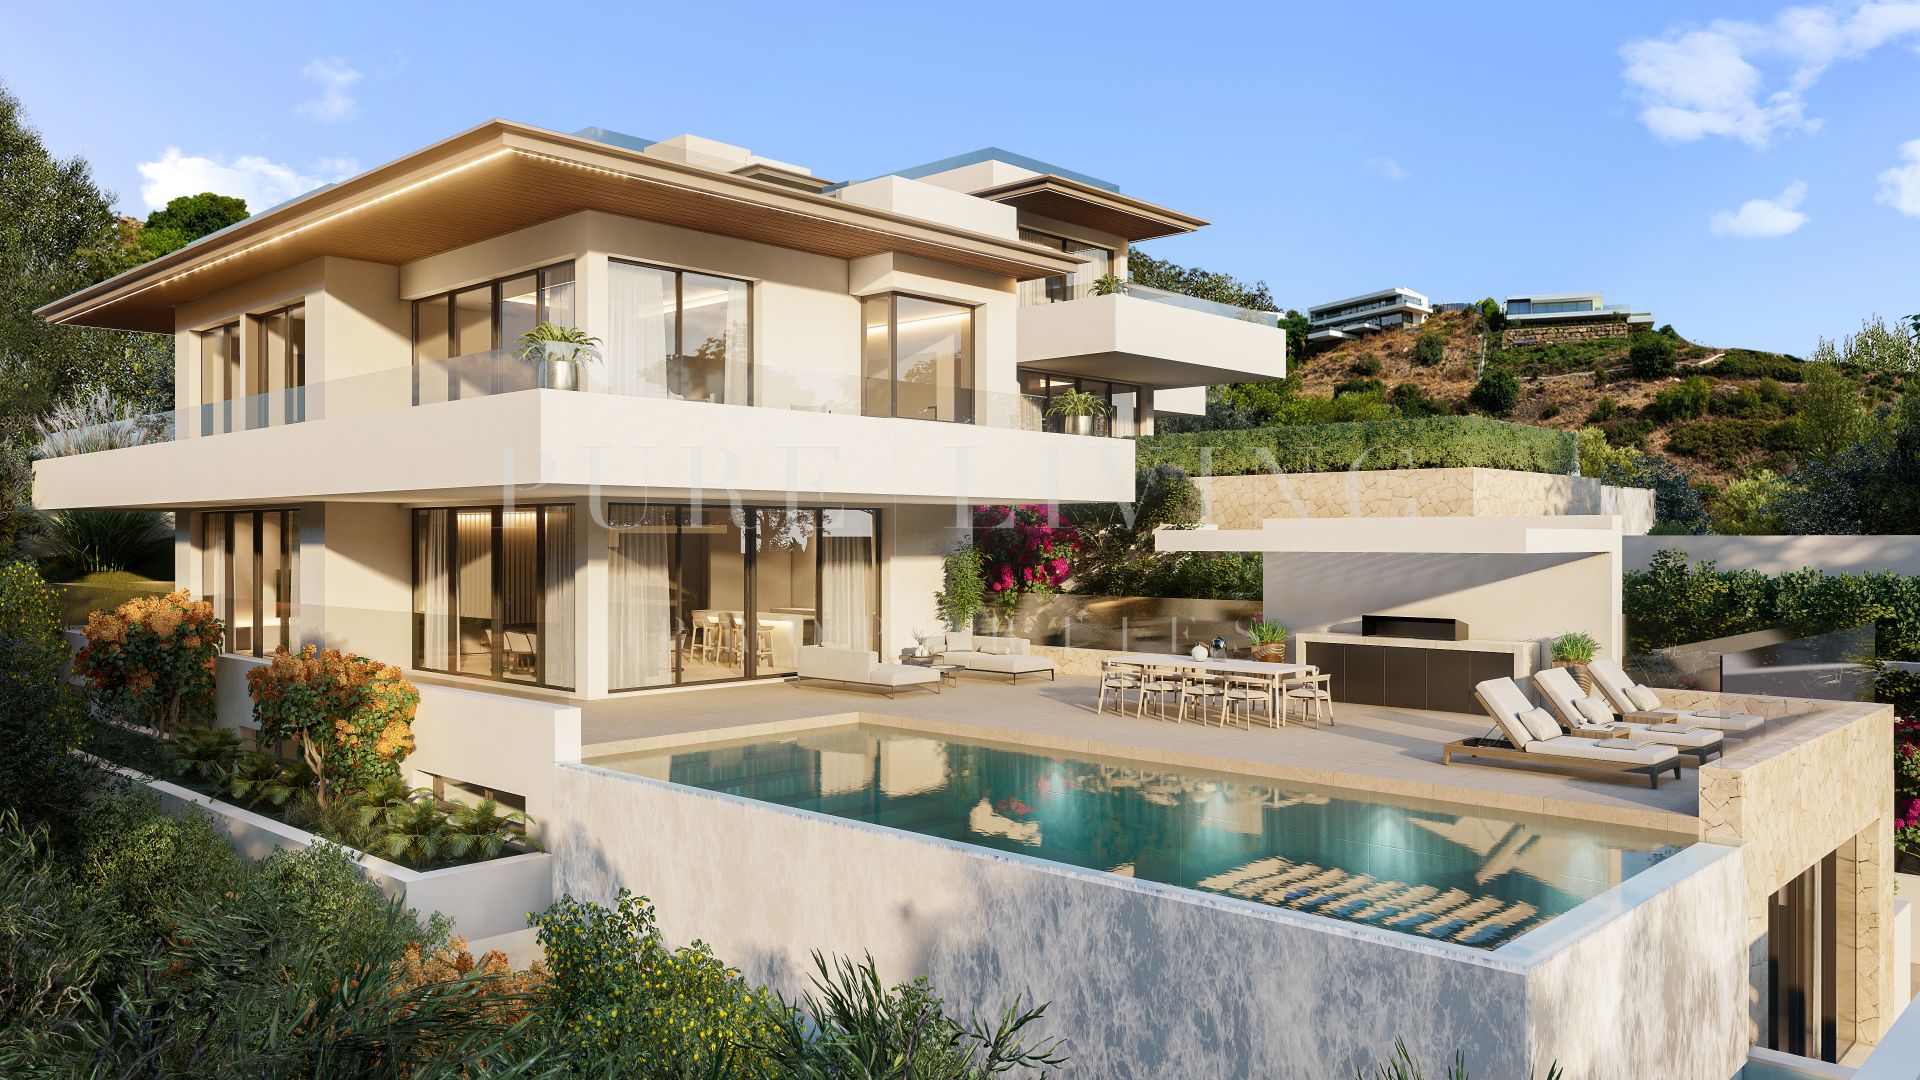 Exquisite villa with stunning sea views located in prime location, Altos de Los Monteros